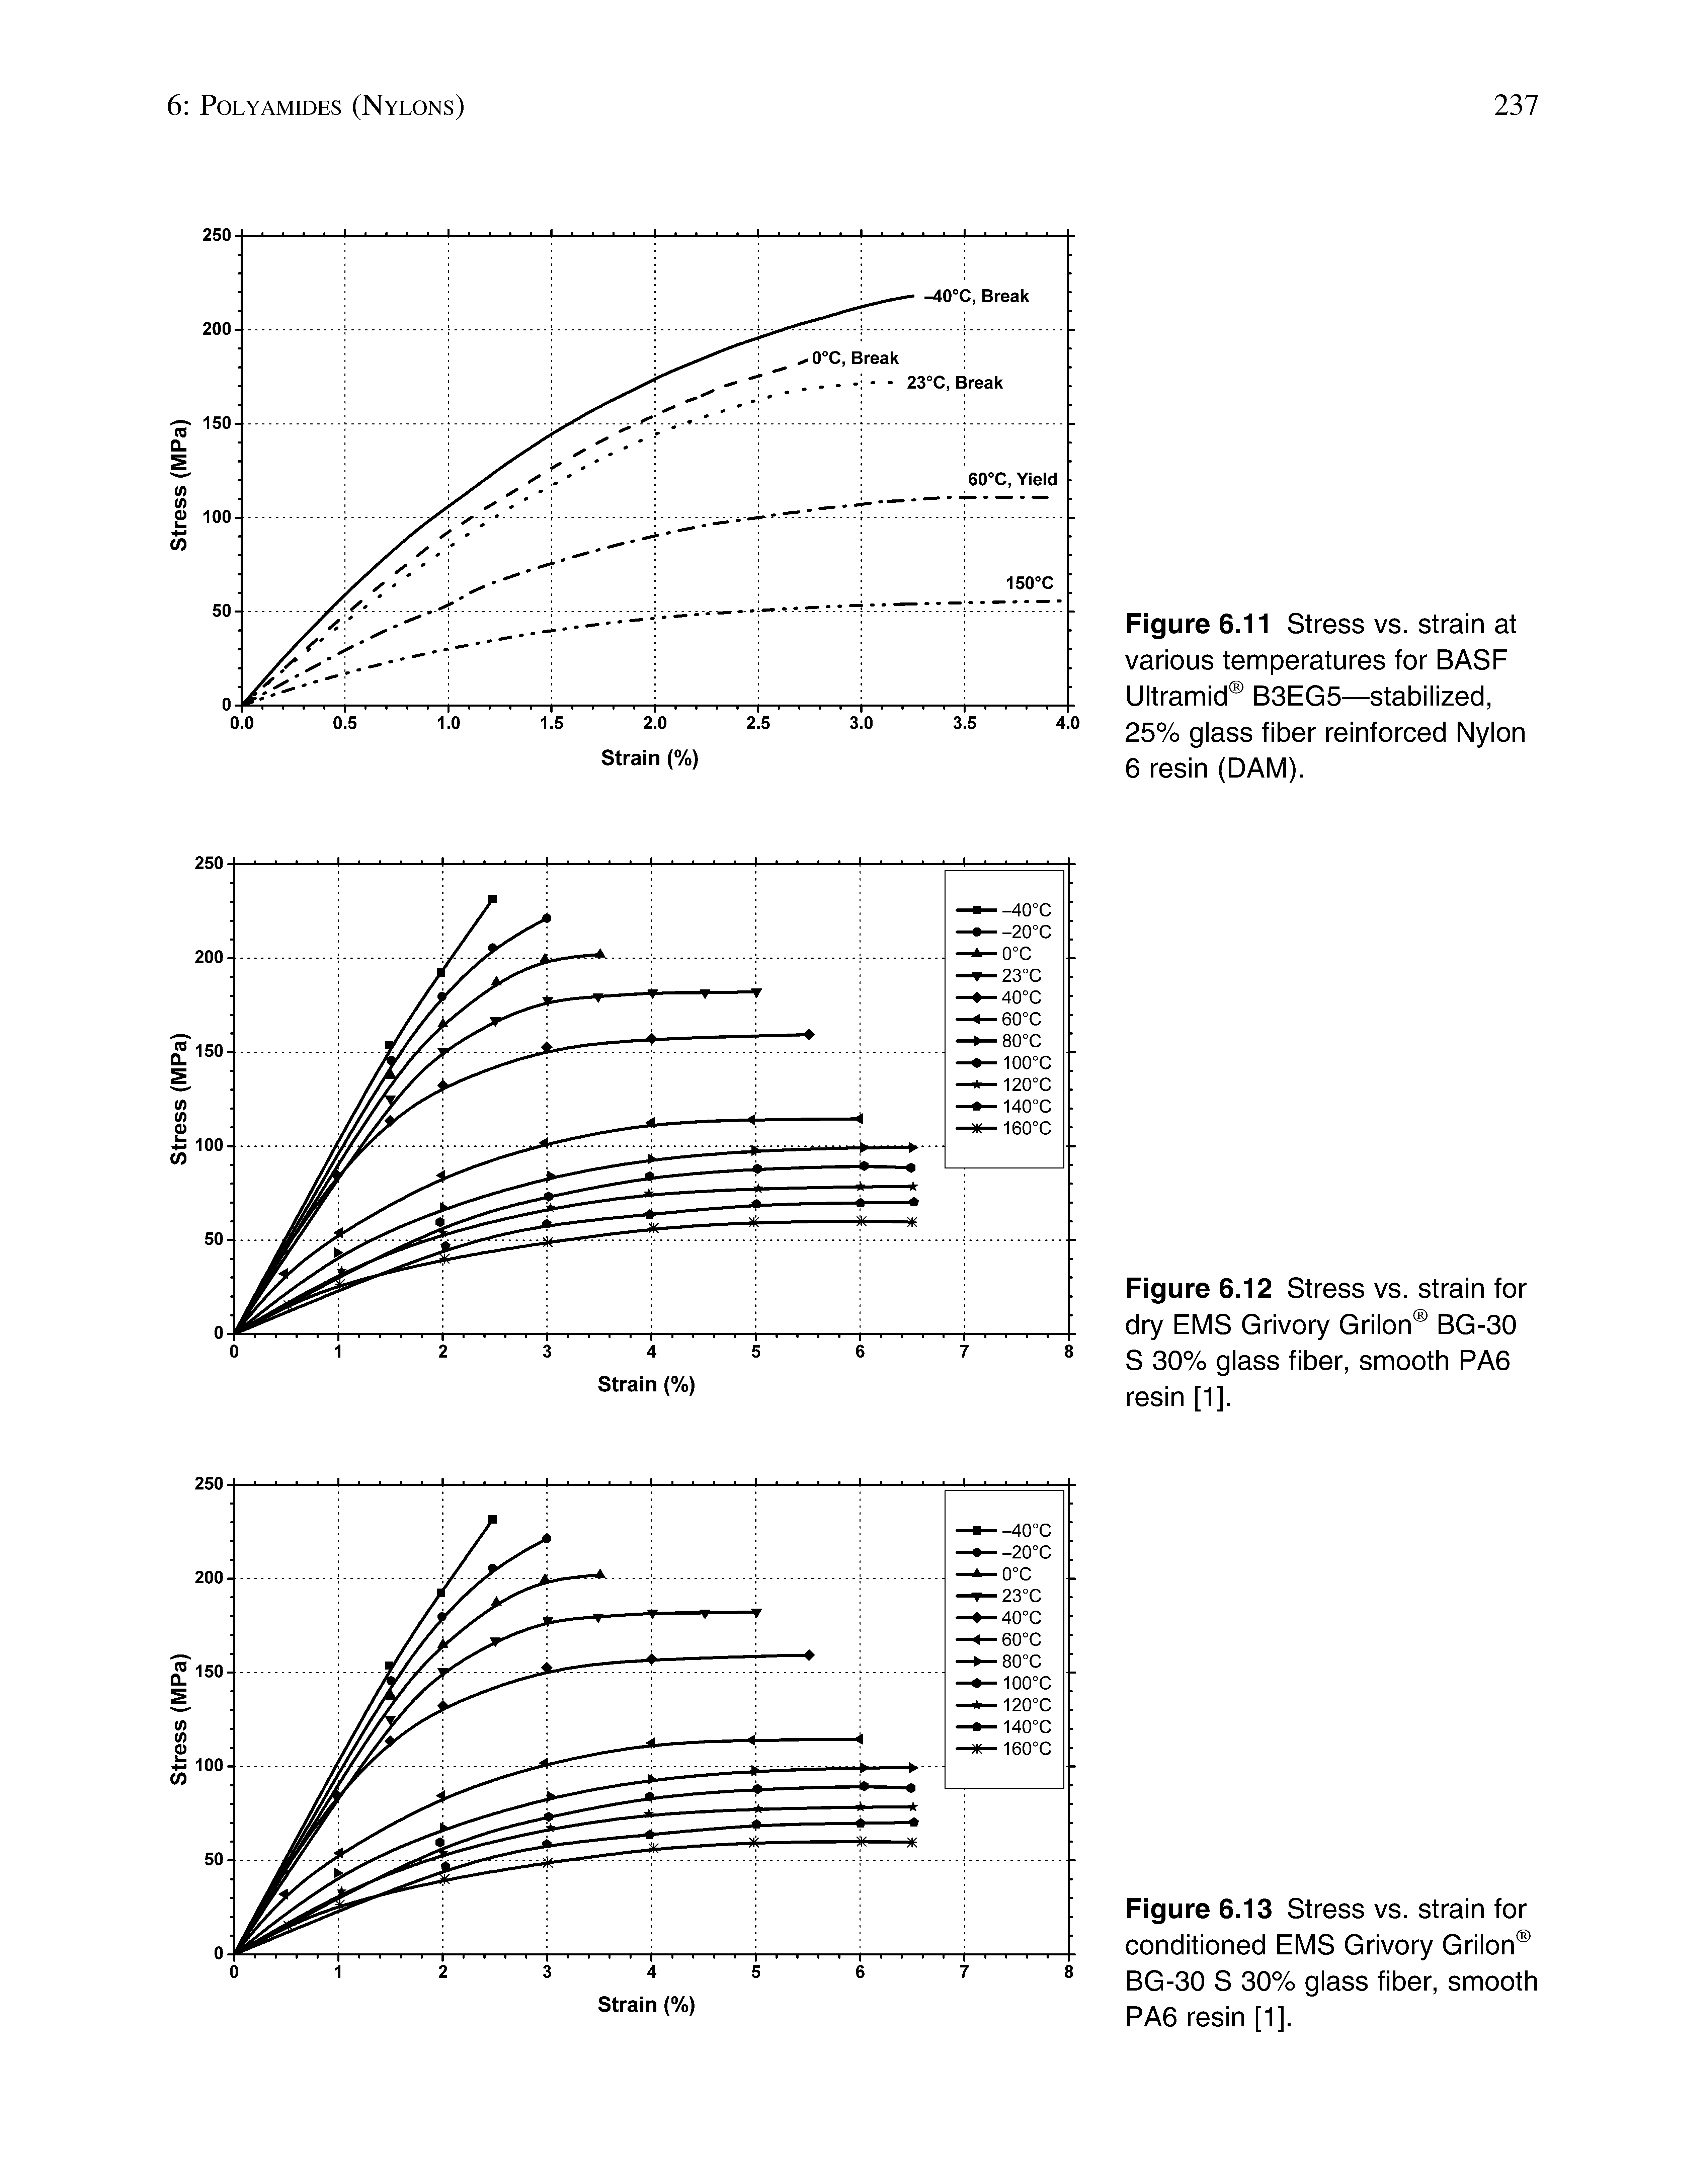 Figure 6.11 Stress vs. strain at various temperatures for BASF Ultramid B3EG5—stabilized, 25% glass fiber reinforced Nylon 6 resin (DAM).